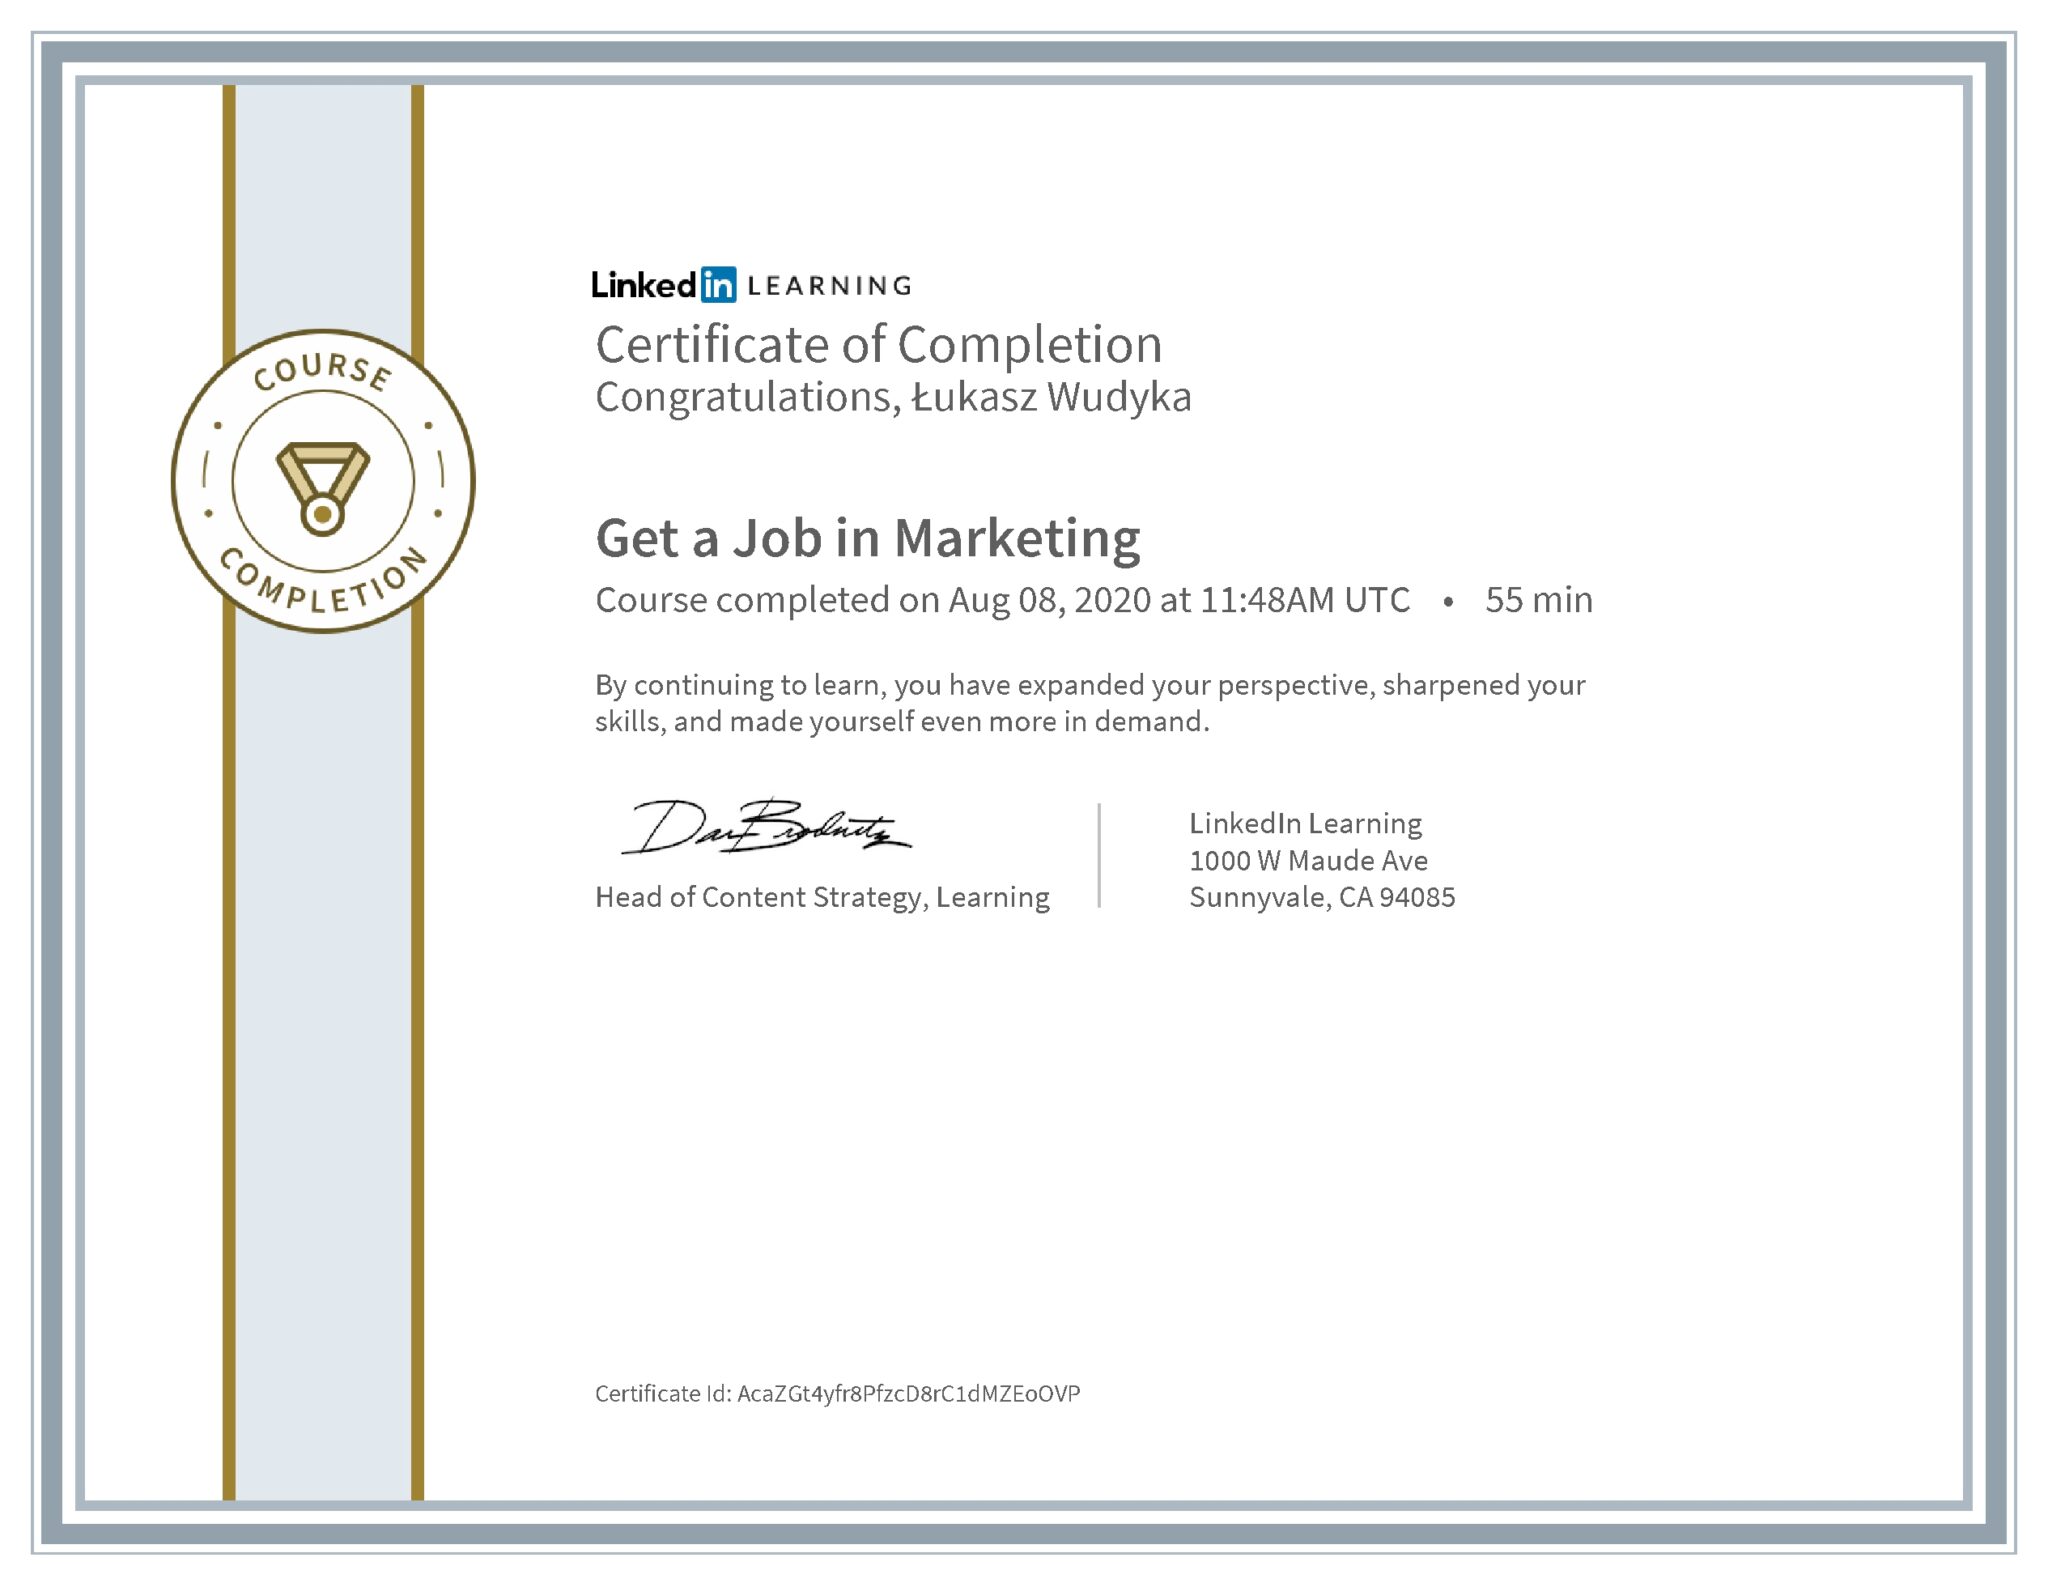 Łukasz Wudyka certyfikat LinkedIn Get a Job in Marketing